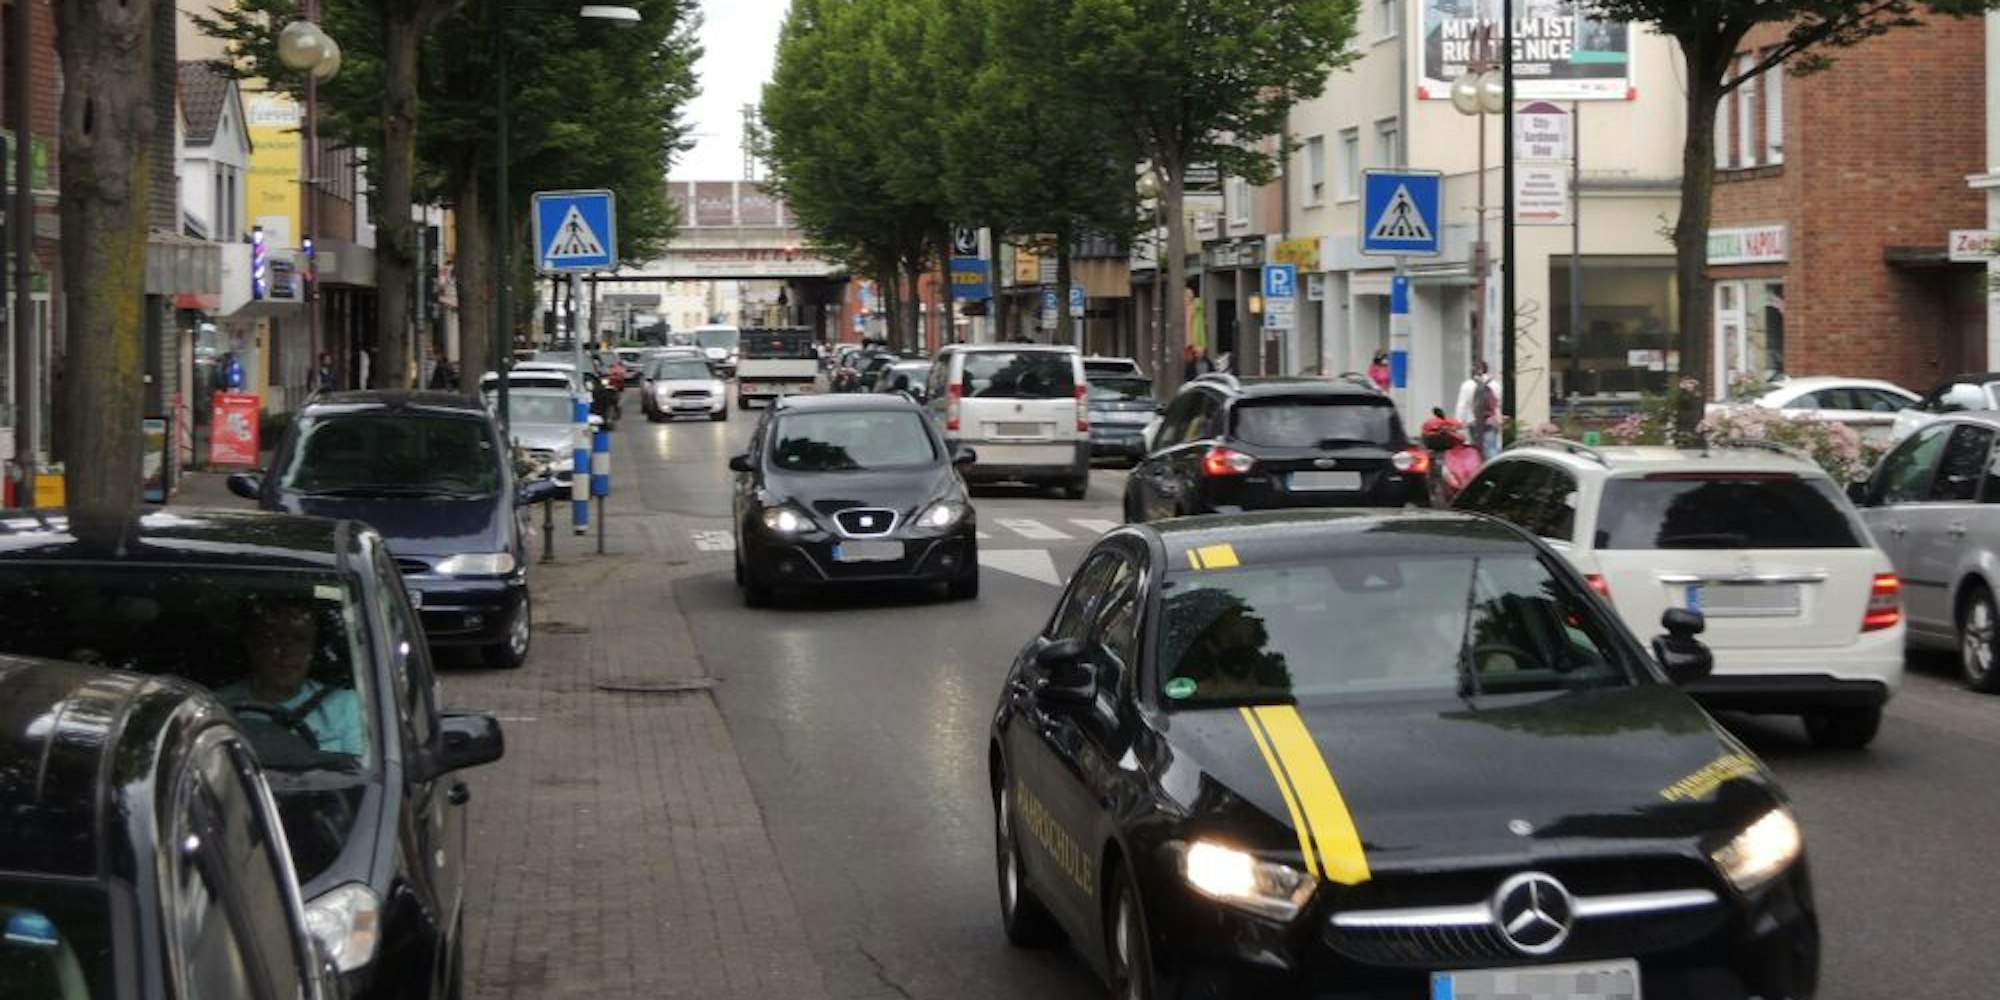 Ein Parkhaus soll Parkplätze ersetzen, die Hauptstraße von Radlern, Fußgängern und Autos genutzt werden, so die Ausschussmehrheit.